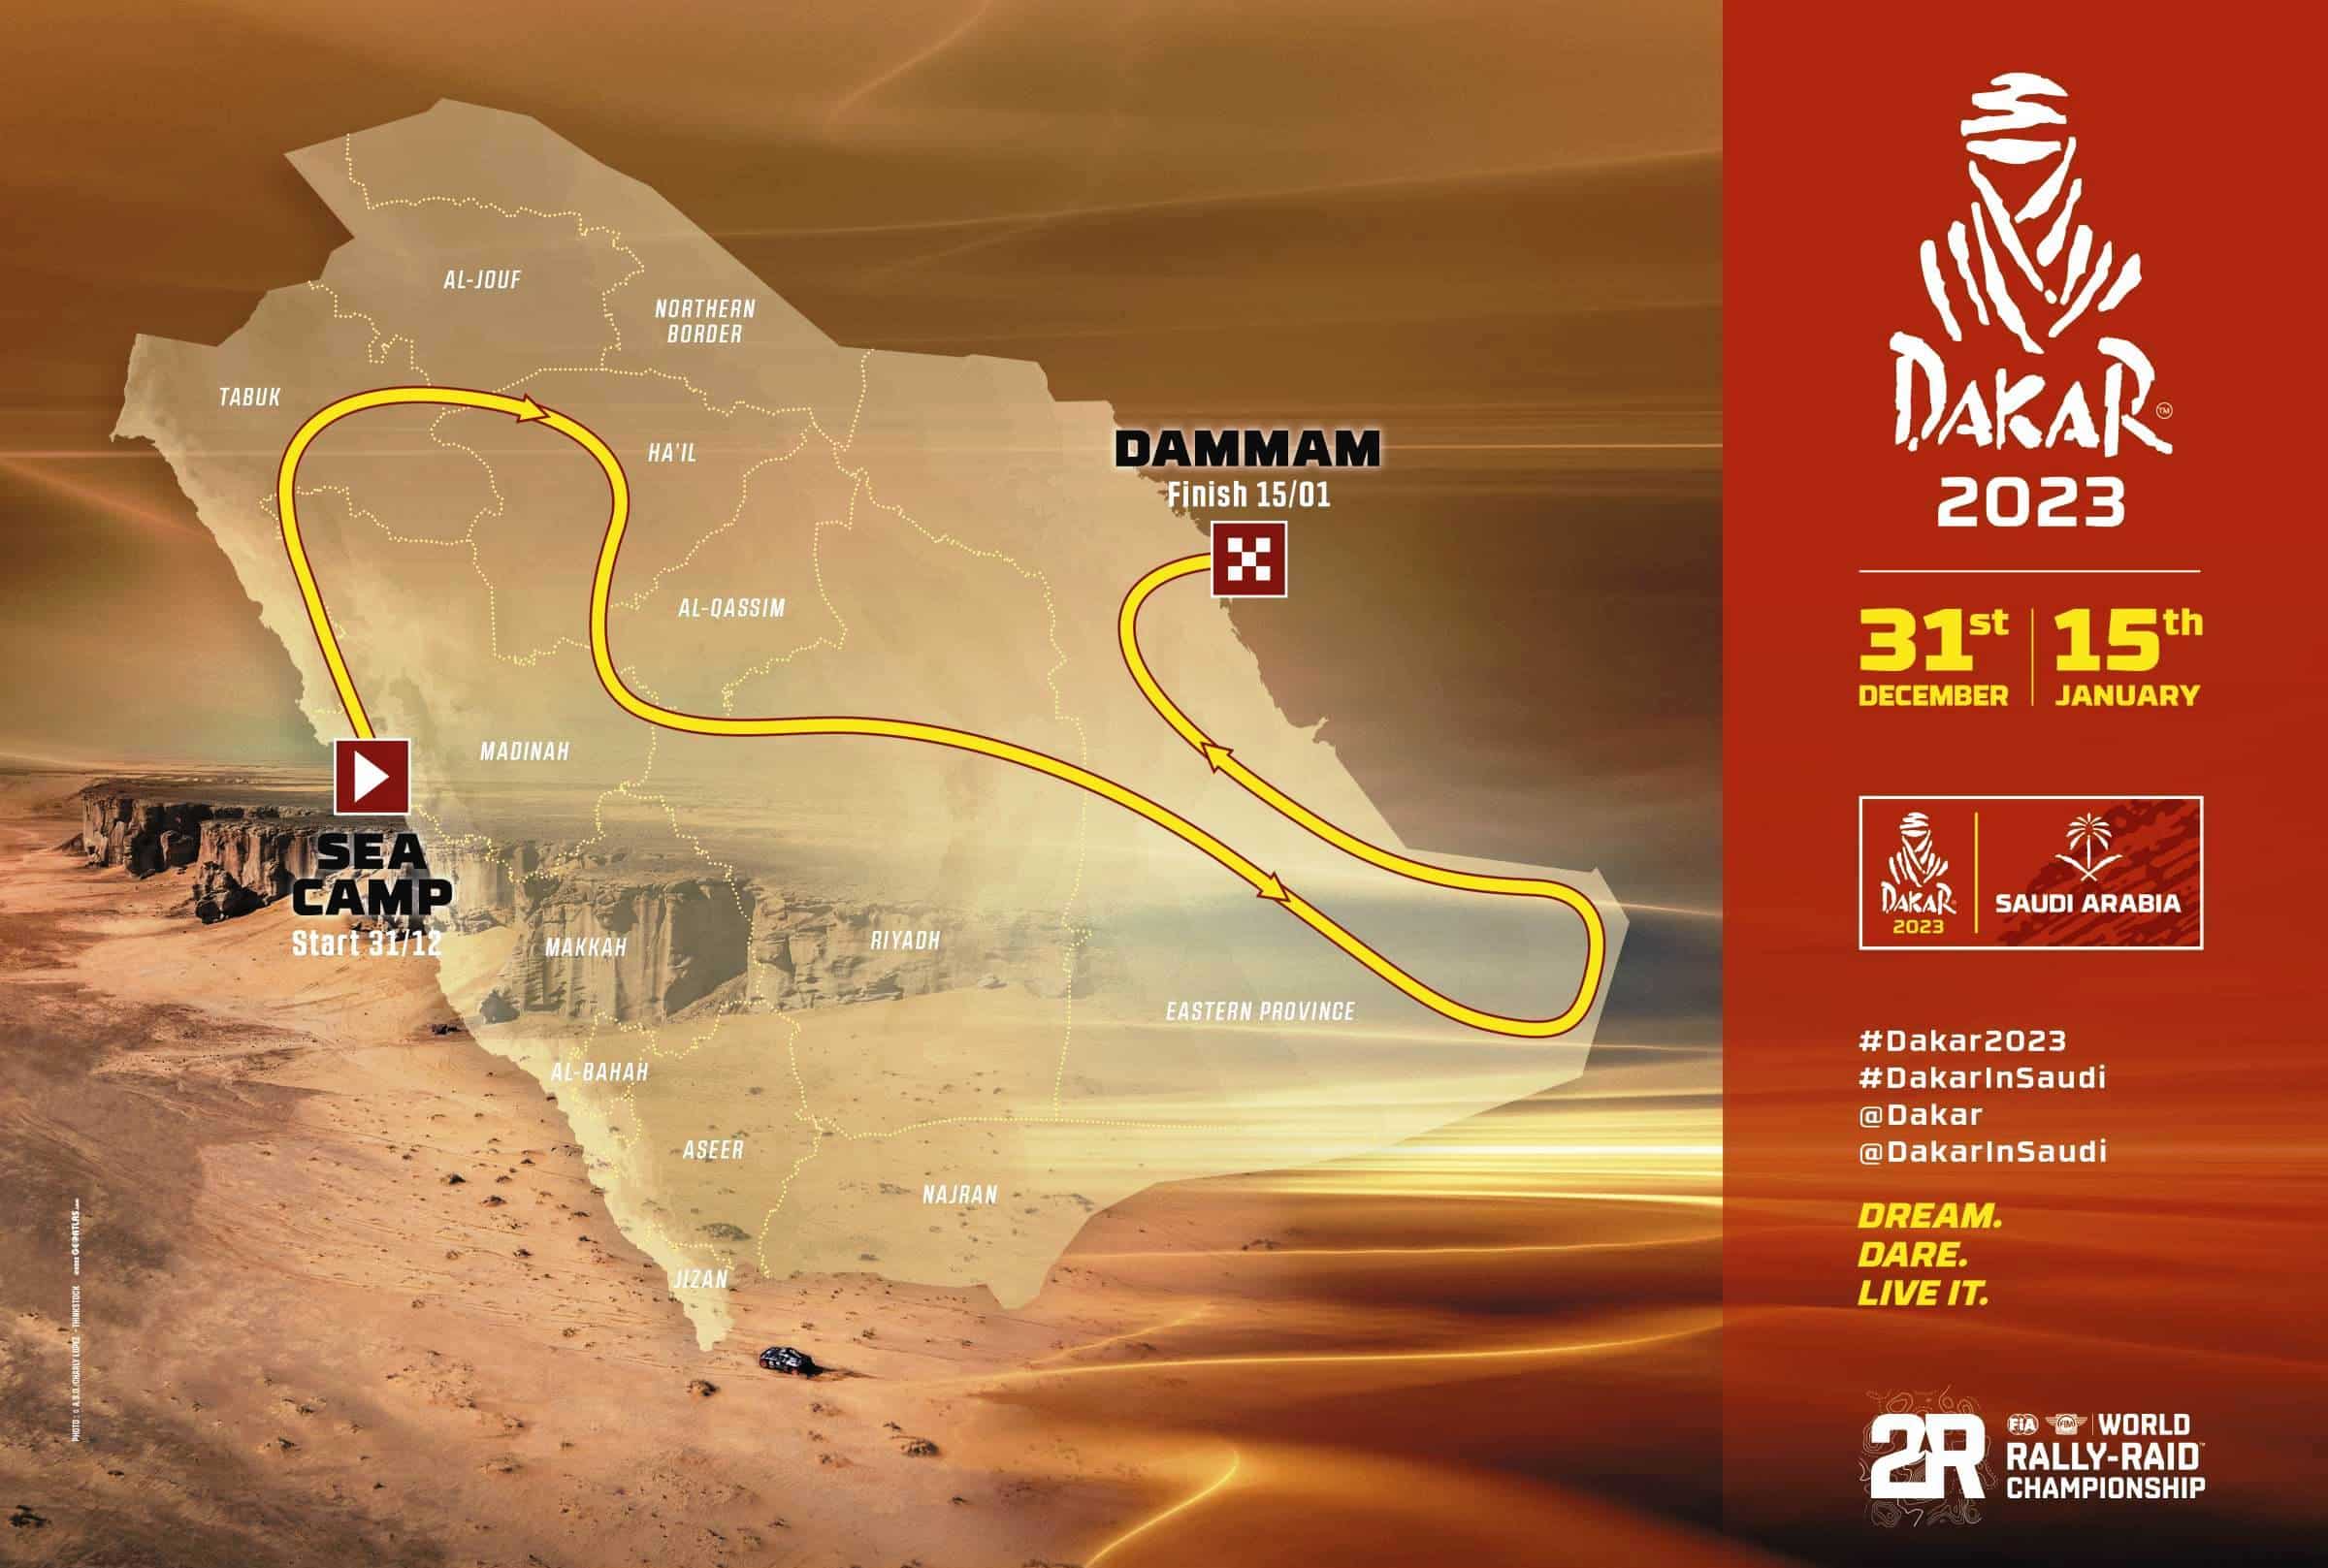 El Dakar 2023, protagonista avui al Formula Marca